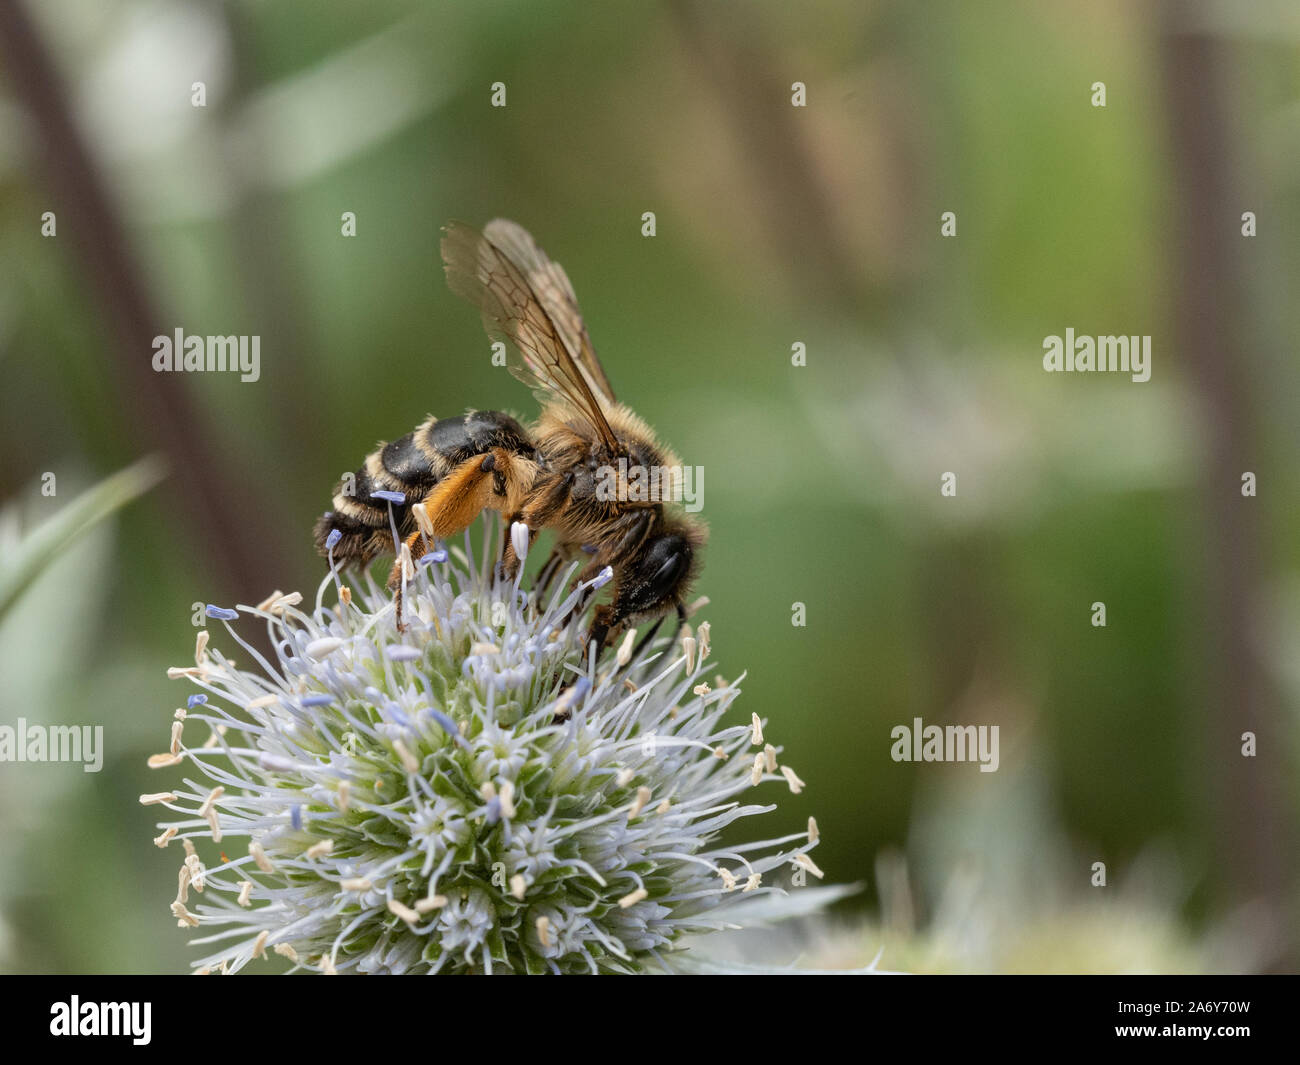 A close up of a honeybee feeding on an Erygynum flowerhead Stock Photo